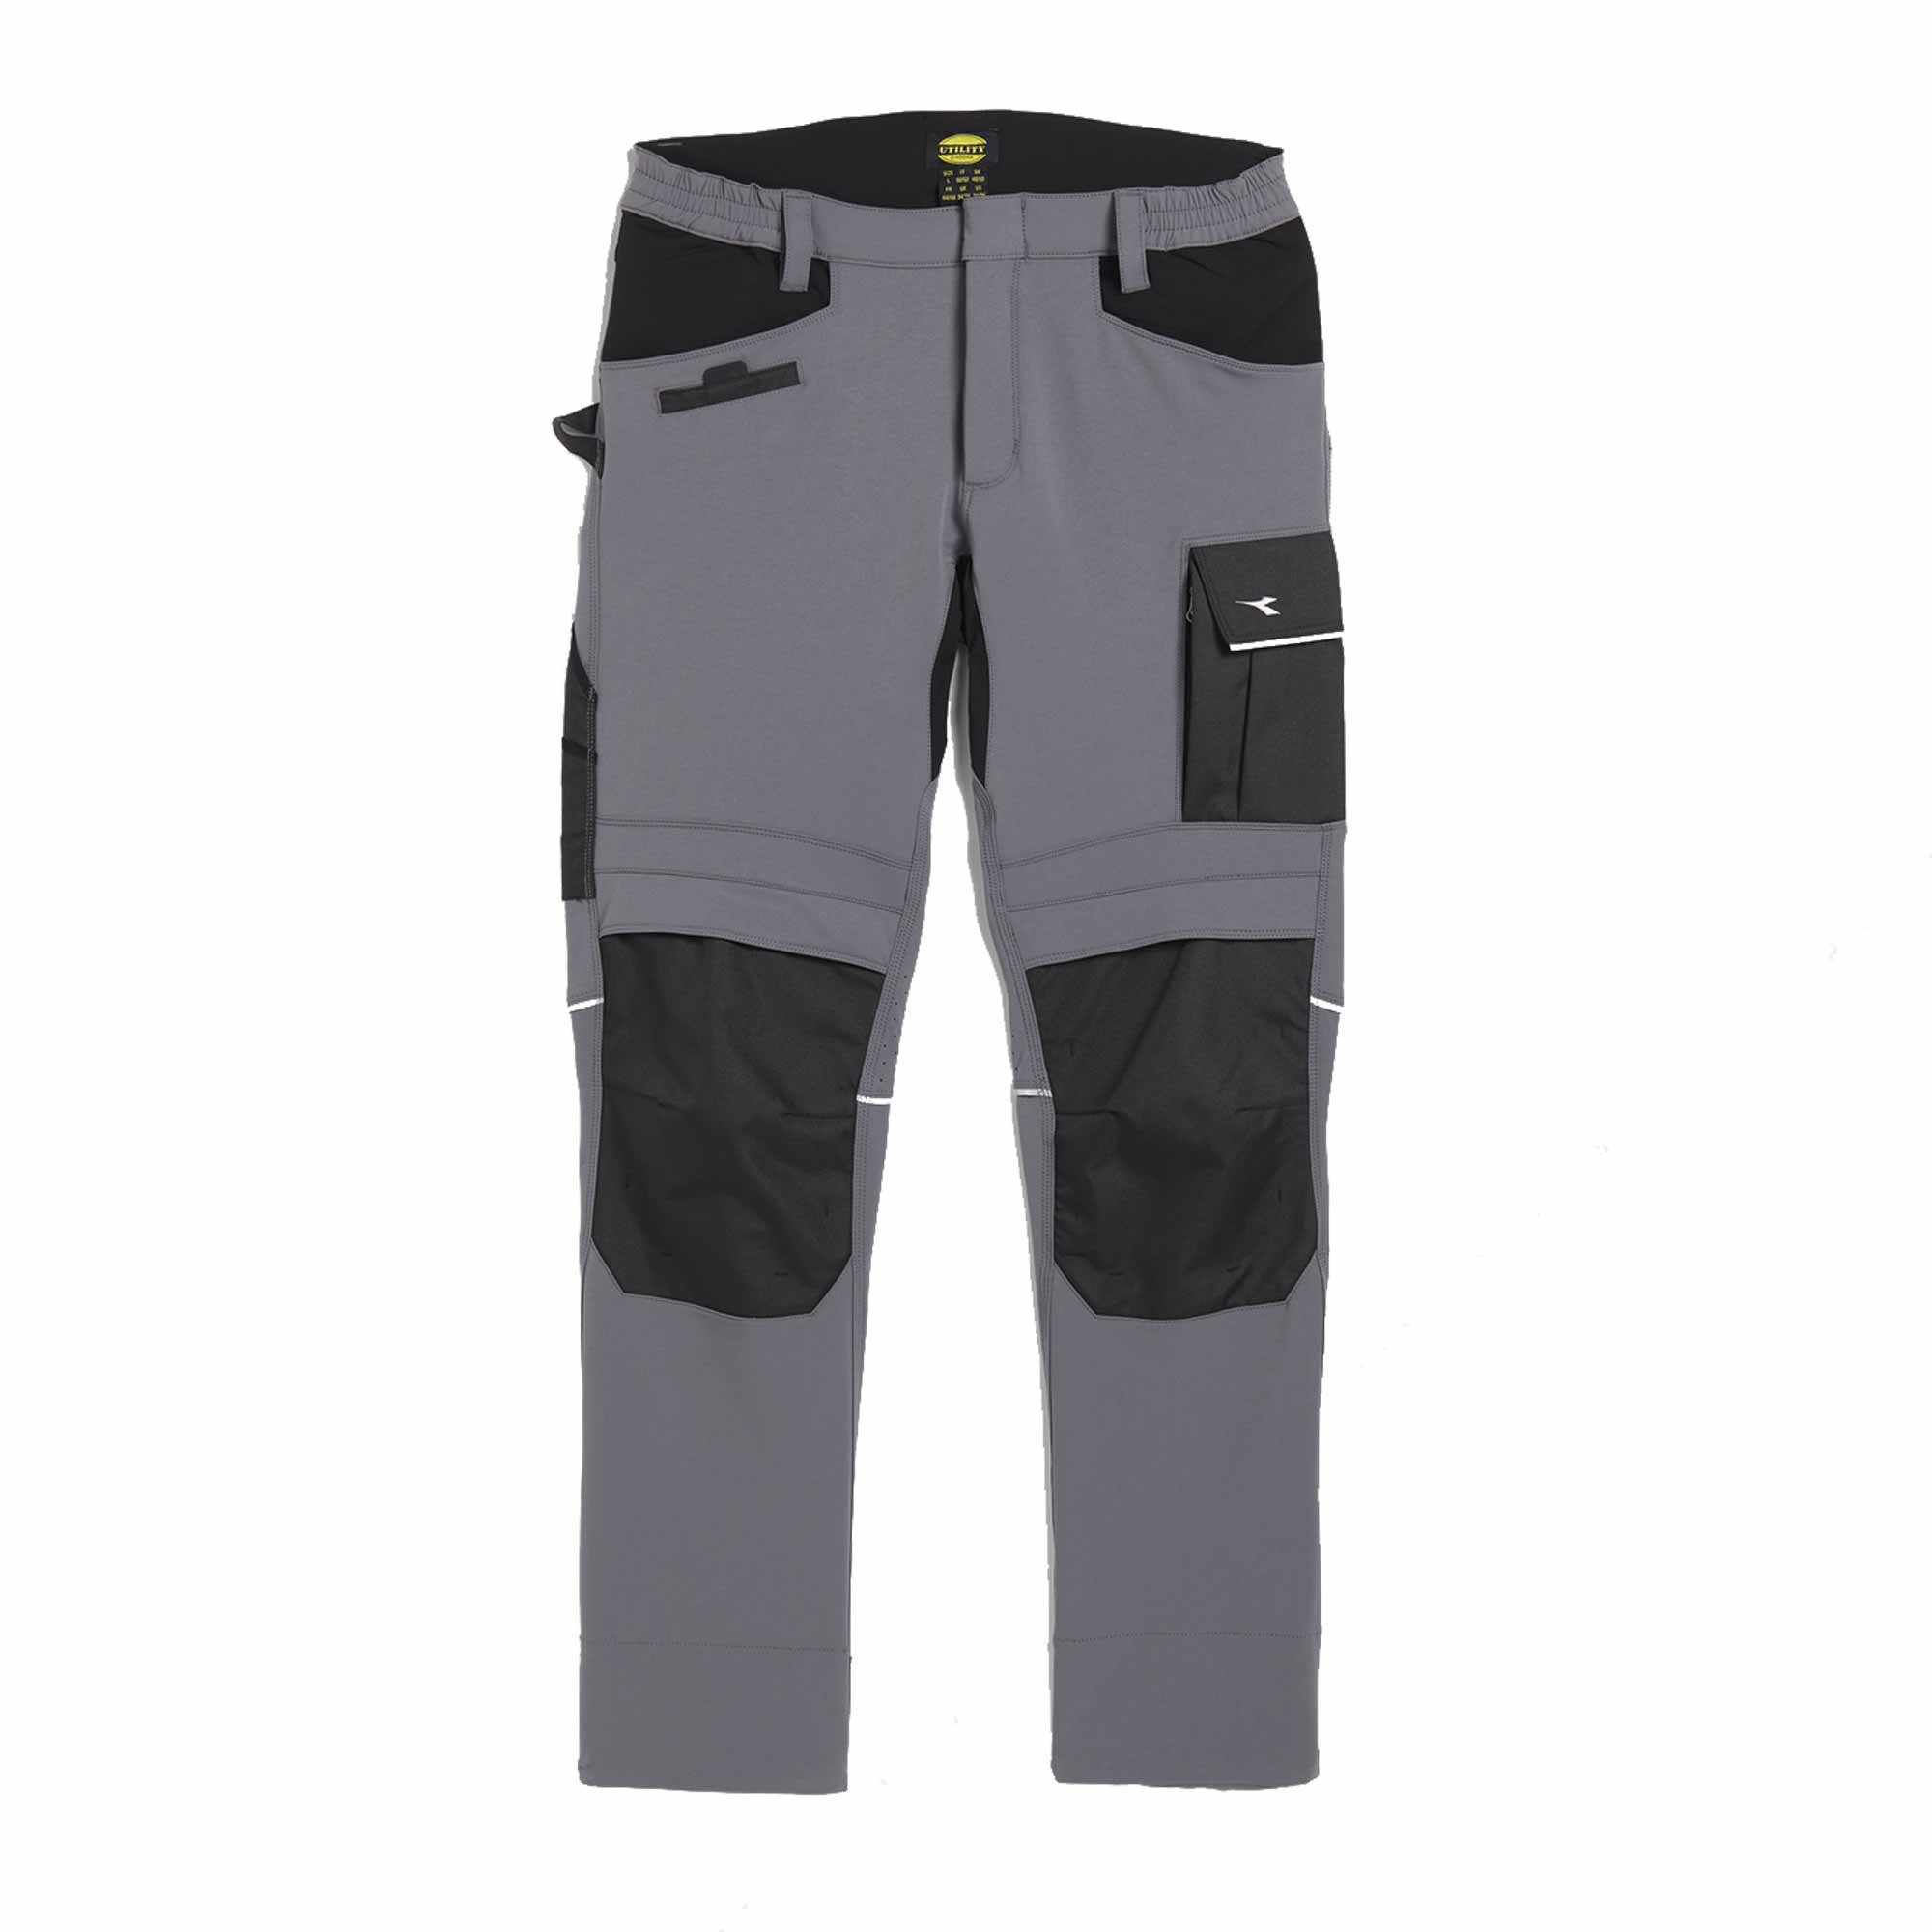 Pantalon Diadora Pant Carbon Performance